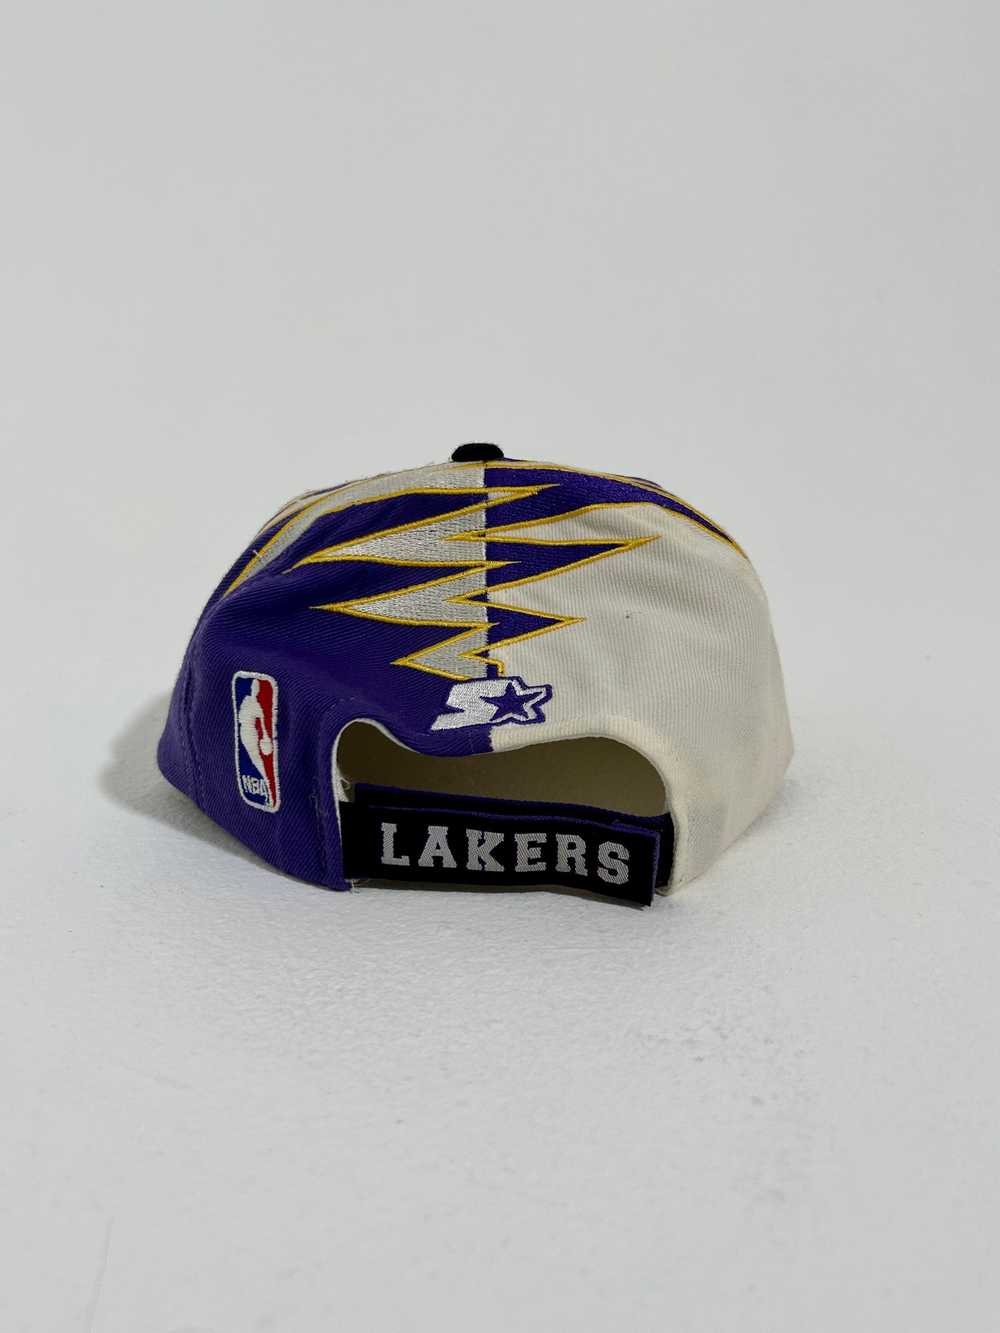 Vintage Los Angeles Lakers Starter Shockwave Hat - image 3